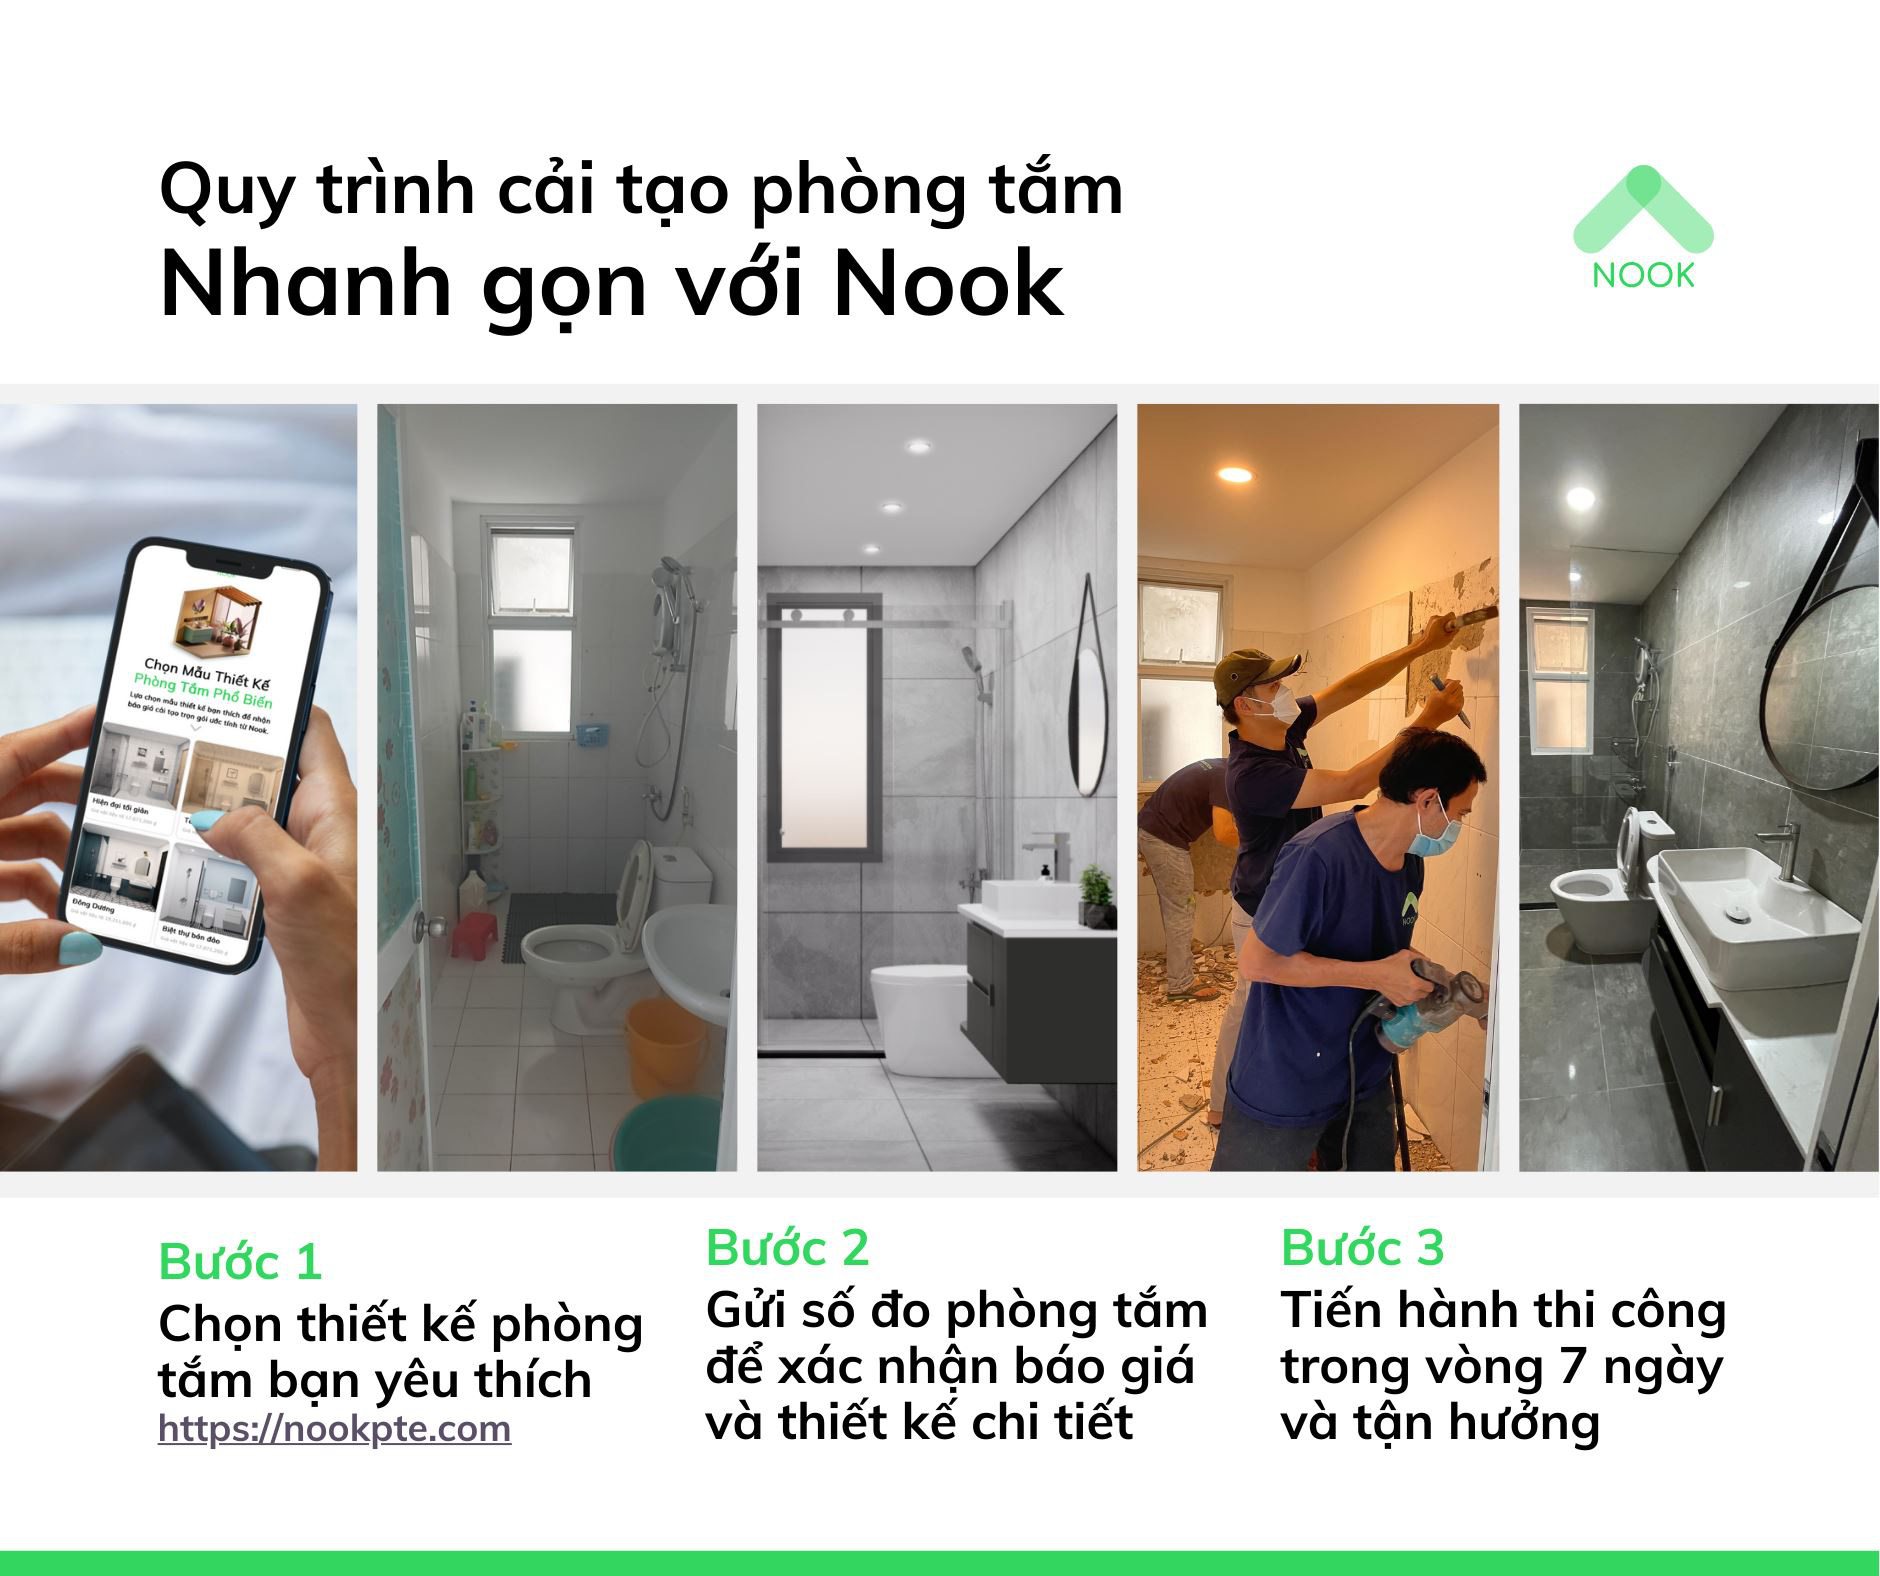 “Hô biến” phòng tắm cũ trở nên đẹp đẽ với công cụ thiết kế ảo 3D cùng Nook! - Ảnh 4.